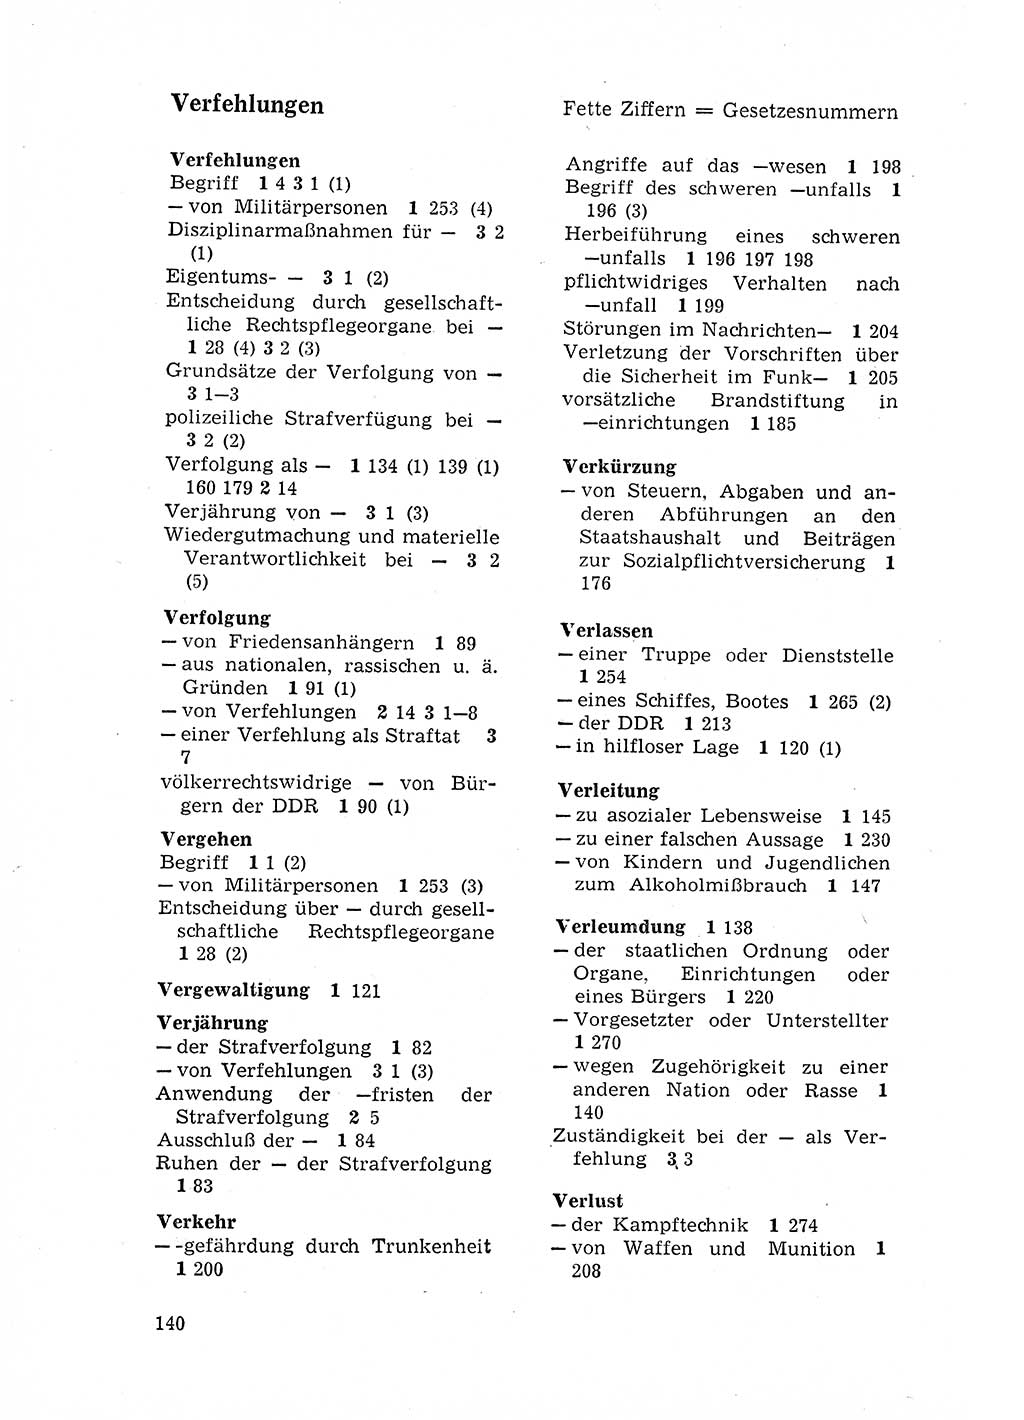 Strafgesetzbuch (StGB) der Deutschen Demokratischen Republik (DDR) 1968, Seite 140 (StGB DDR 1968, S. 140)